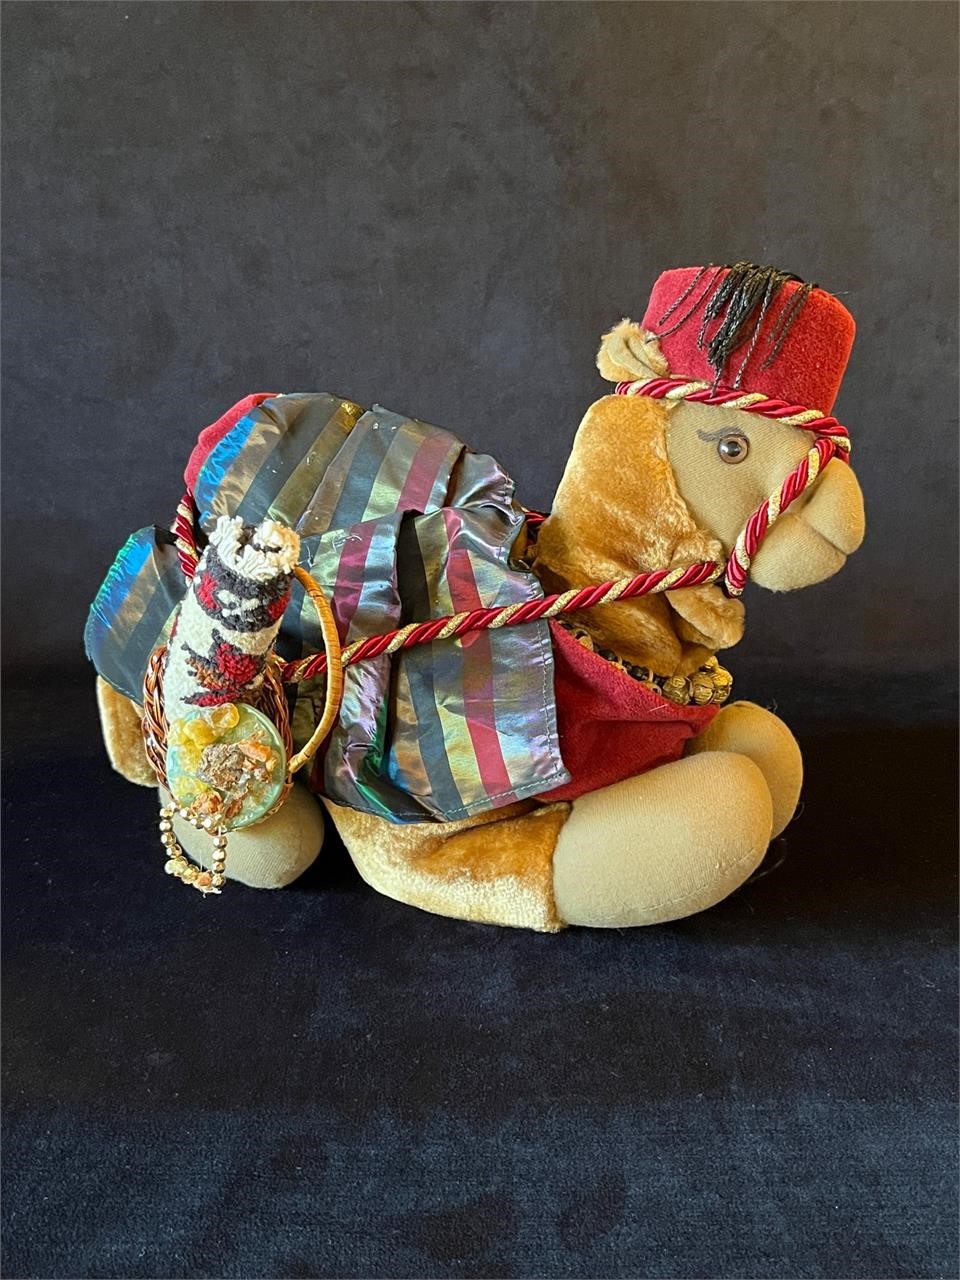 Arabian Stuffed Camel in Fez